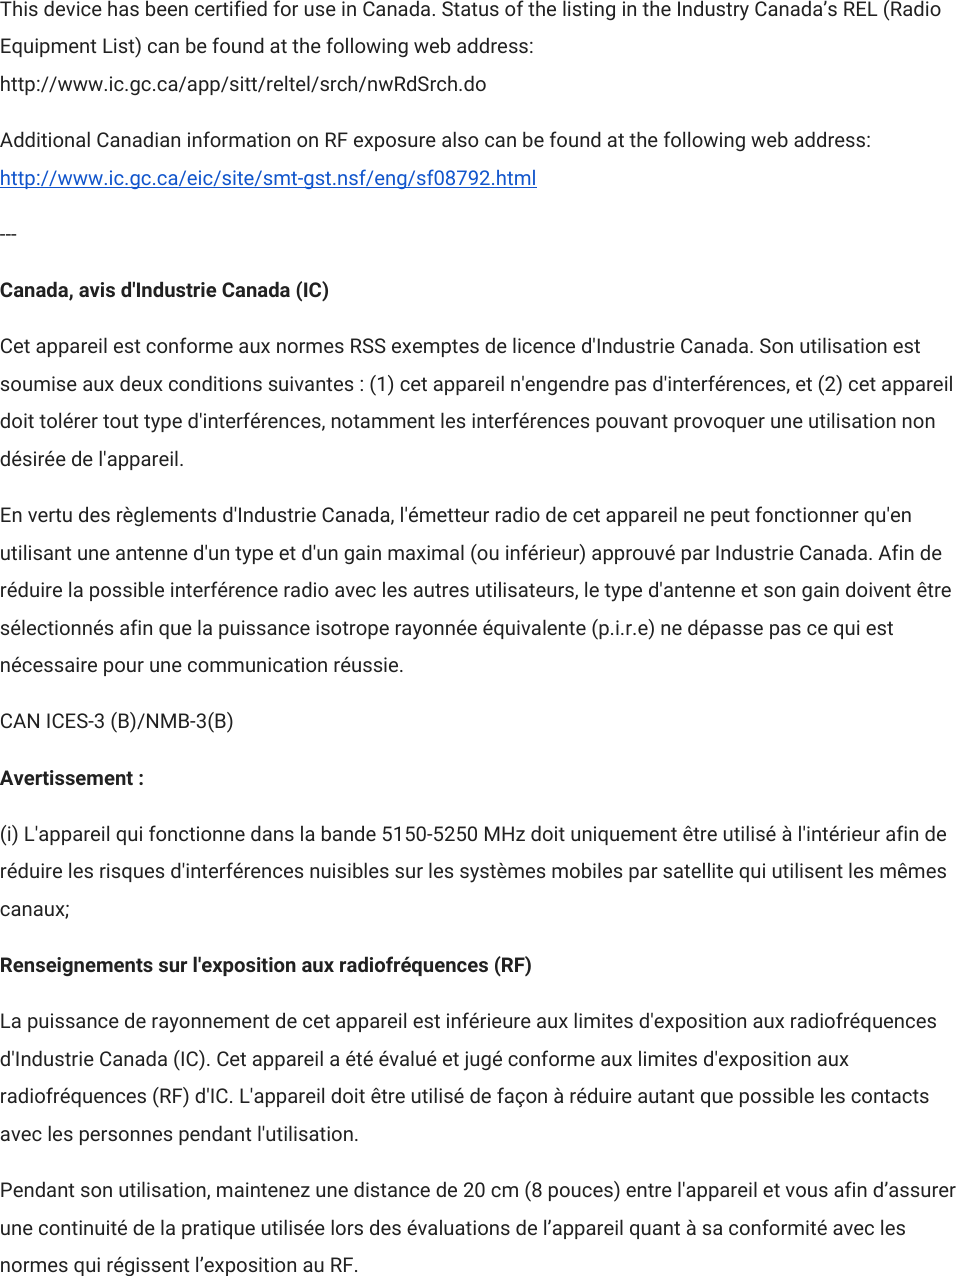 This device has been certified for use in Canada. Status of the listing in the Industry Canada’s REL (Radio Equipment List) can be found at the following web address: http://www.ic.gc.ca/app/sitt/reltel/srch/nwRdSrch.do Additional Canadian information on RF exposure also can be found at the following web address: http://www.ic.gc.ca/eic/site/smt-gst.nsf/eng/sf08792.html --- Canada, avis d&apos;Industrie Canada (IC) Cet appareil est conforme aux normes RSS exemptes de licence d&apos;Industrie Canada. Son utilisation est soumise aux deux conditions suivantes : (1) cet appareil n&apos;engendre pas d&apos;interférences, et (2) cet appareil doit tolérer tout type d&apos;interférences, notamment les interférences pouvant provoquer une utilisation non désirée de l&apos;appareil. En vertu des règlements d&apos;Industrie Canada, l&apos;émetteur radio de cet appareil ne peut fonctionner qu&apos;en utilisant une antenne d&apos;un type et d&apos;un gain maximal (ou inférieur) approuvé par Industrie Canada. Afin de réduire la possible interférence radio avec les autres utilisateurs, le type d&apos;antenne et son gain doivent être sélectionnés afin que la puissance isotrope rayonnée équivalente (p.i.r.e) ne dépasse pas ce qui est nécessaire pour une communication réussie. CAN ICES-3 (B)/NMB-3(B) Avertissement : (i) L&apos;appareil qui fonctionne dans la bande 5150-5250 MHz doit uniquement être utilisé à l&apos;intérieur afin de réduire les risques d&apos;interférences nuisibles sur les systèmes mobiles par satellite qui utilisent les mêmes canaux; Renseignements sur l&apos;exposition aux radiofréquences (RF) La puissance de rayonnement de cet appareil est inférieure aux limites d&apos;exposition aux radiofréquences d&apos;Industrie Canada (IC). Cet appareil a été évalué et jugé conforme aux limites d&apos;exposition aux radiofréquences (RF) d&apos;IC. L&apos;appareil doit être utilisé de façon à réduire autant que possible les contacts avec les personnes pendant l&apos;utilisation. Pendant son utilisation, maintenez une distance de 20 cm (8 pouces) entre l&apos;appareil et vous afin d’assurer une continuité de la pratique utilisée lors des évaluations de l’appareil quant à sa conformité avec les normes qui régissent l’exposition au RF. 